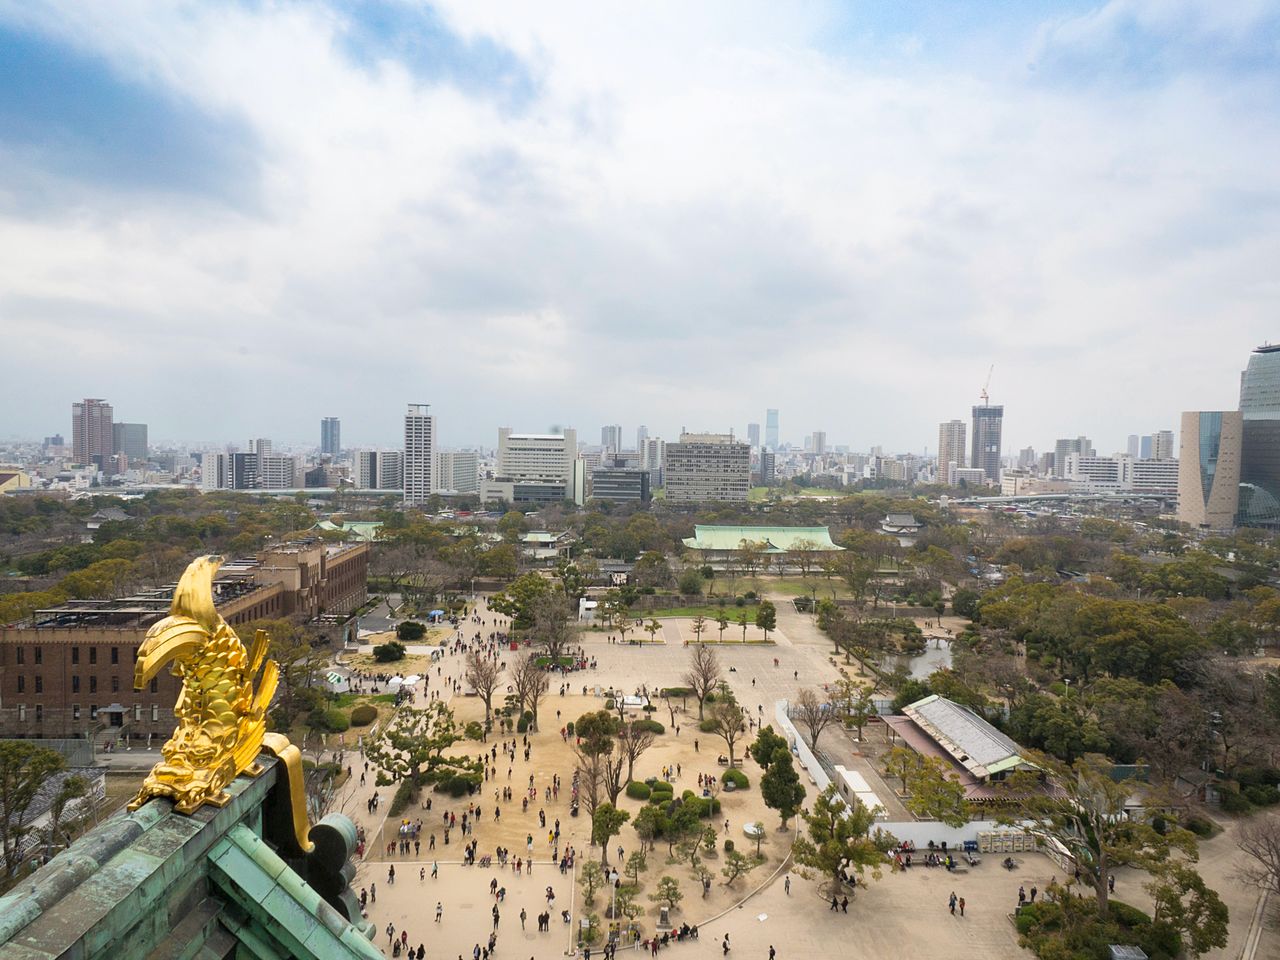 從觀景台可以拍到以金鯱為前景的大阪城市風光照